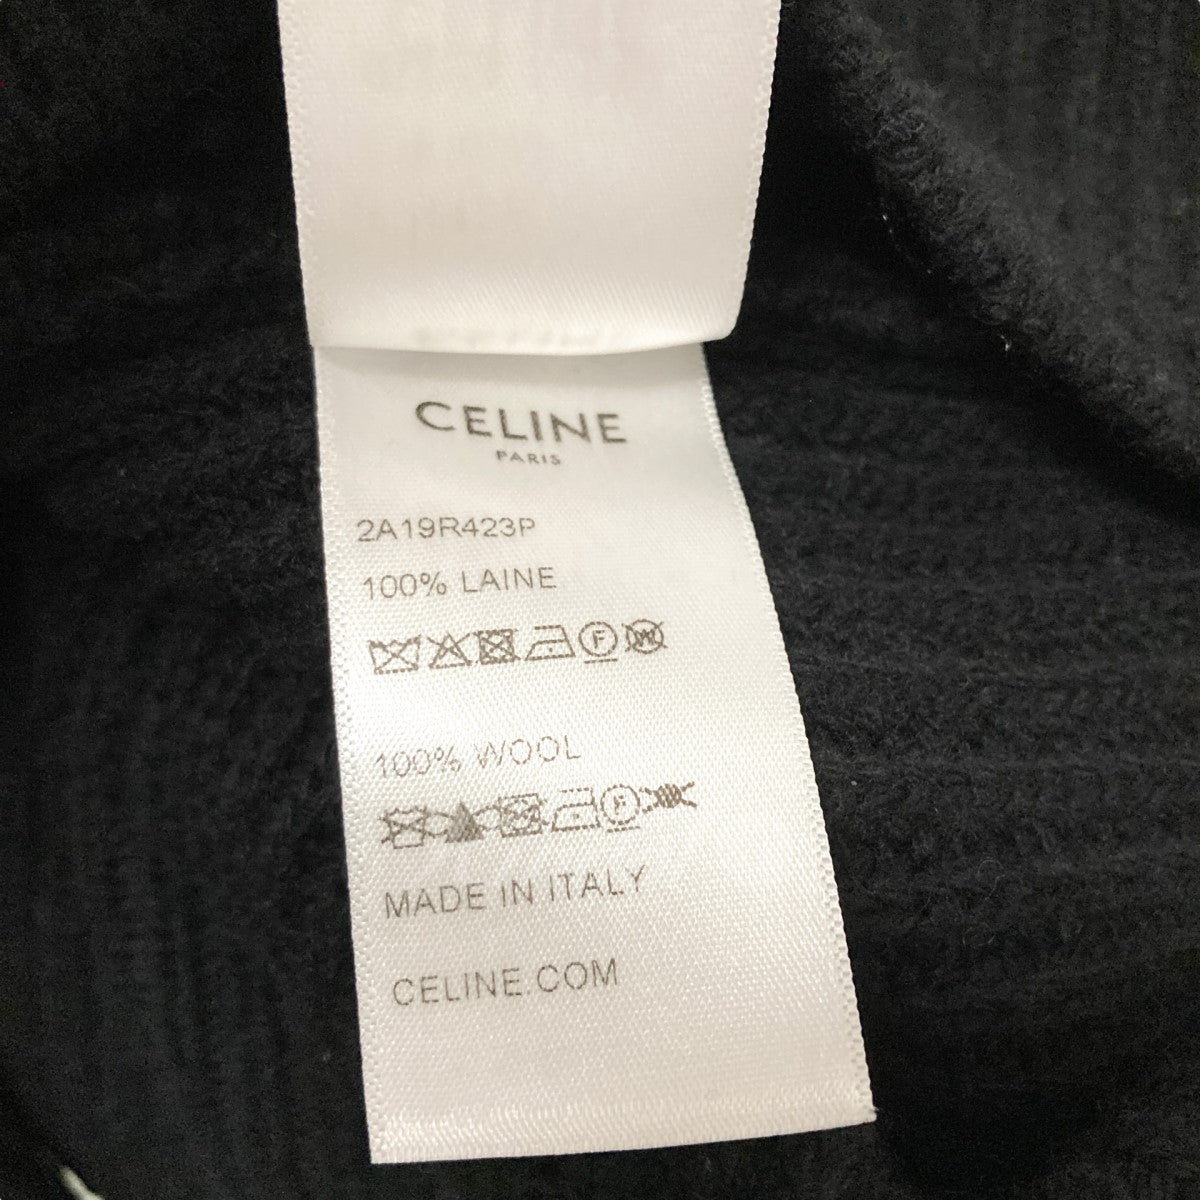 CELINE(セリーヌ) エンブロイダリー オーバーサイズセーター 2A19R423P